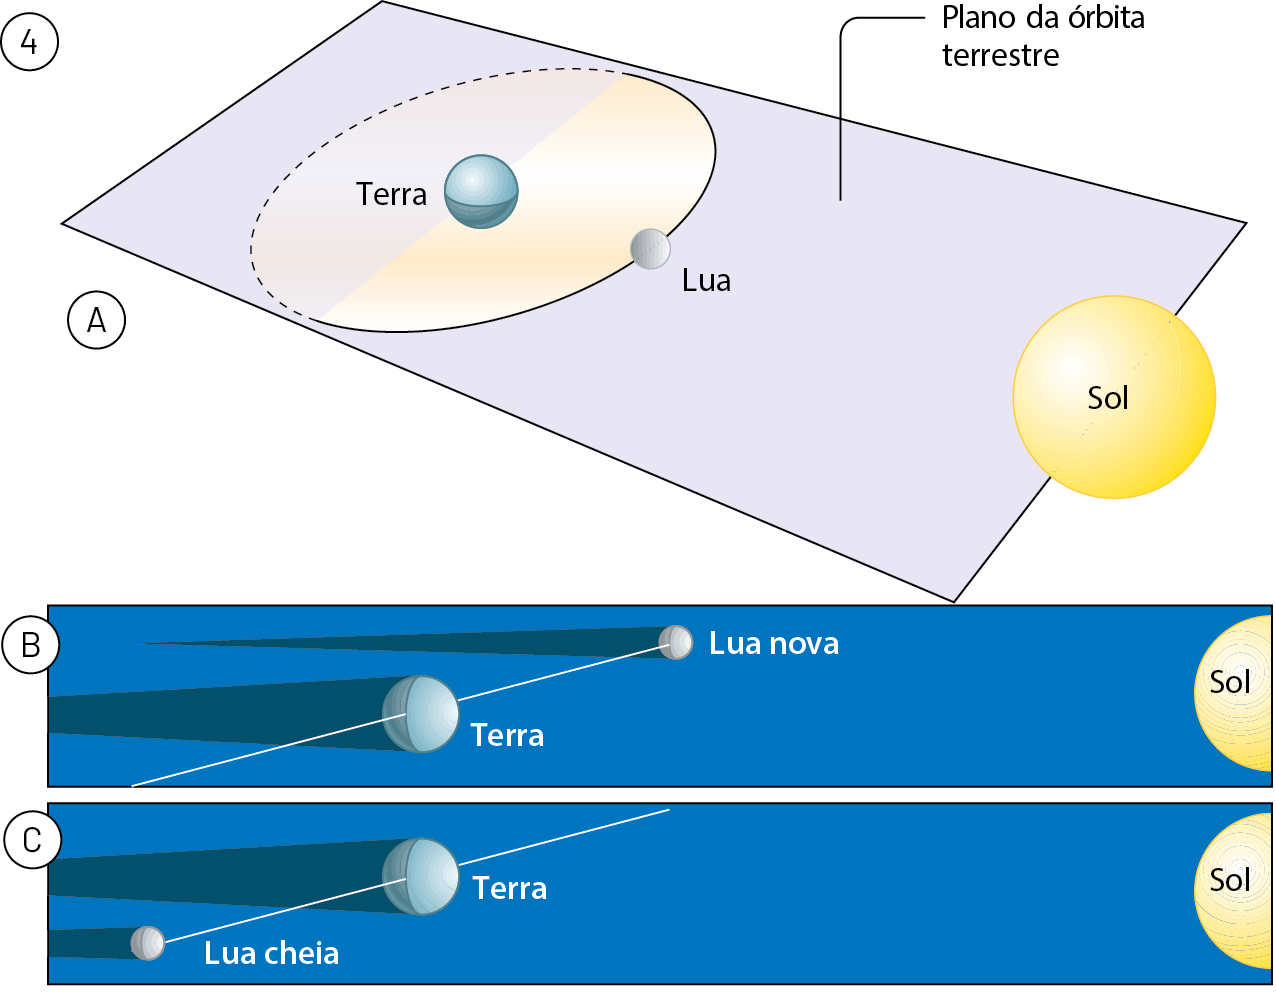 Esquema 4. A: plano da órbita terrestre, com Terra, Sol e Lua alinhados, com o Sol à direita. A Lua está desenhada em apenas um ponto entre o Sol e a Terra, na órbita lunar. B: Imagem da Lua nova em uma linha inclinada. Ela não está no cone de sombra da Terra. C: Imagem da Lua cheia em uma linha inclinada. Ela não está no cone de sombra da Terra.